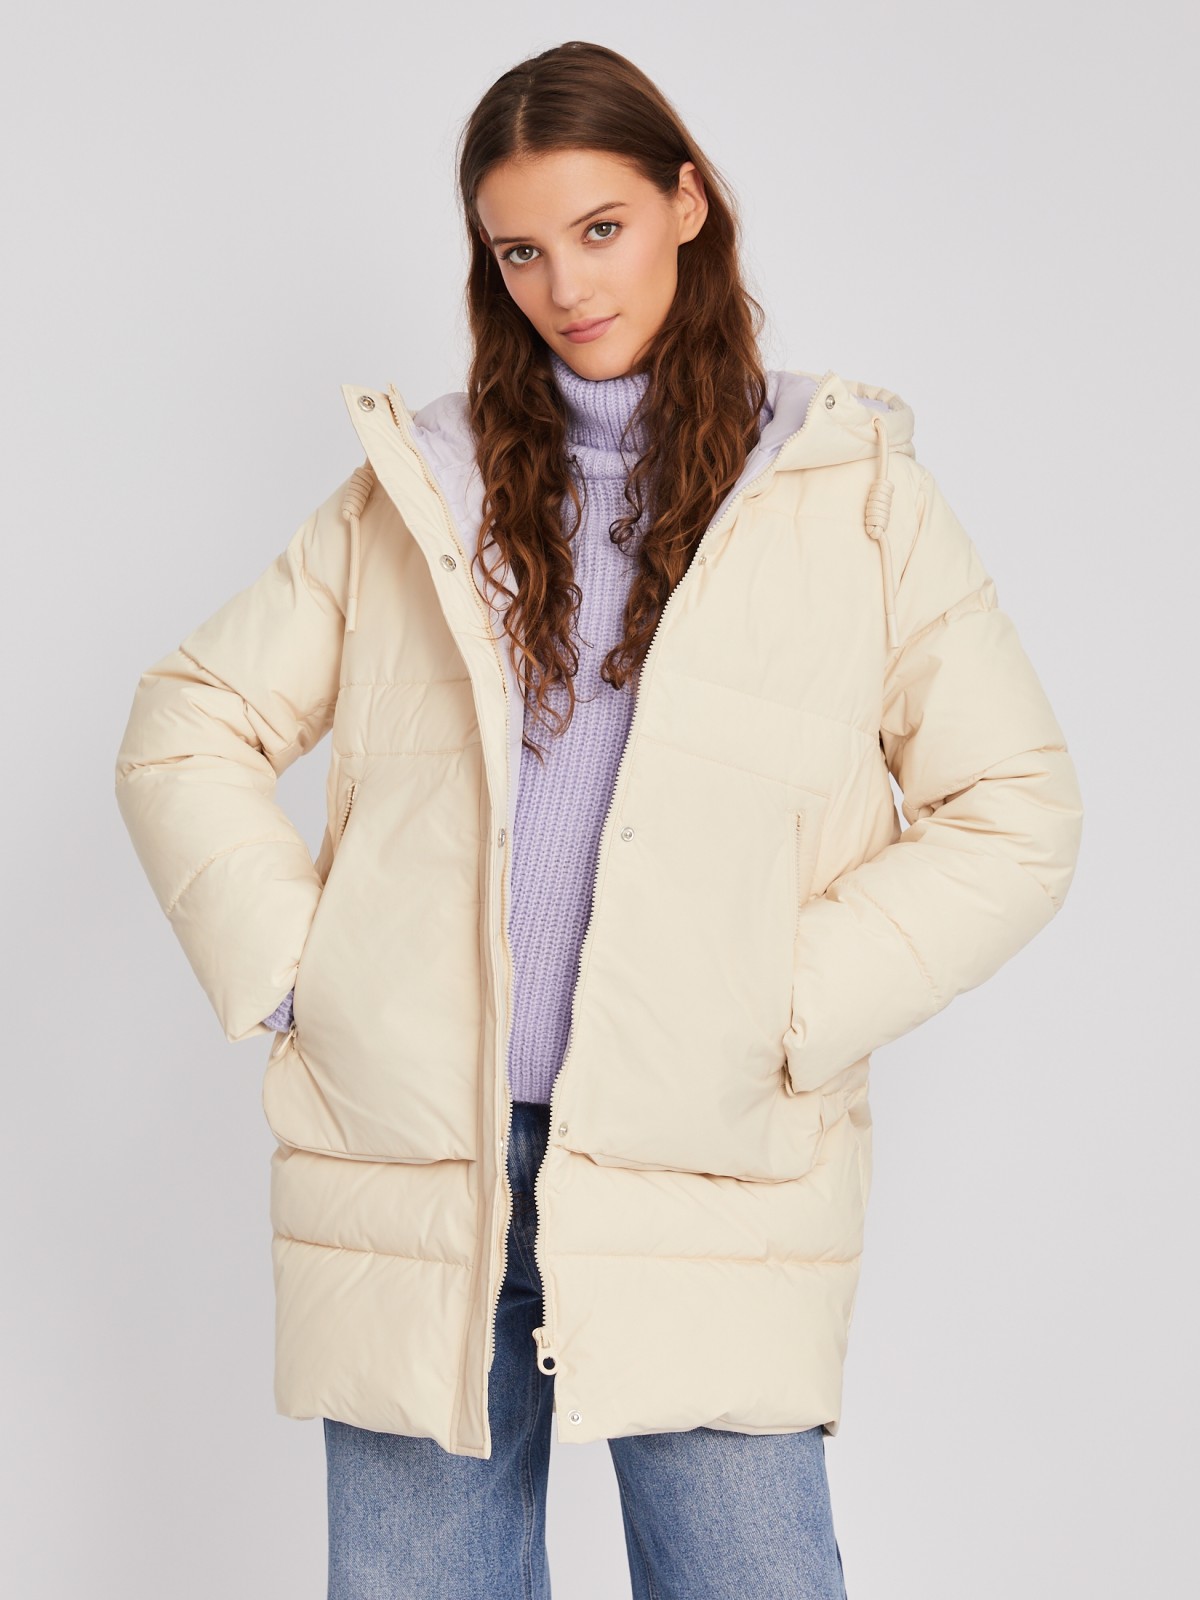 Тёплая стёганая куртка-пальто с капюшоном zolla 023345202114, цвет молоко, размер XS - фото 1